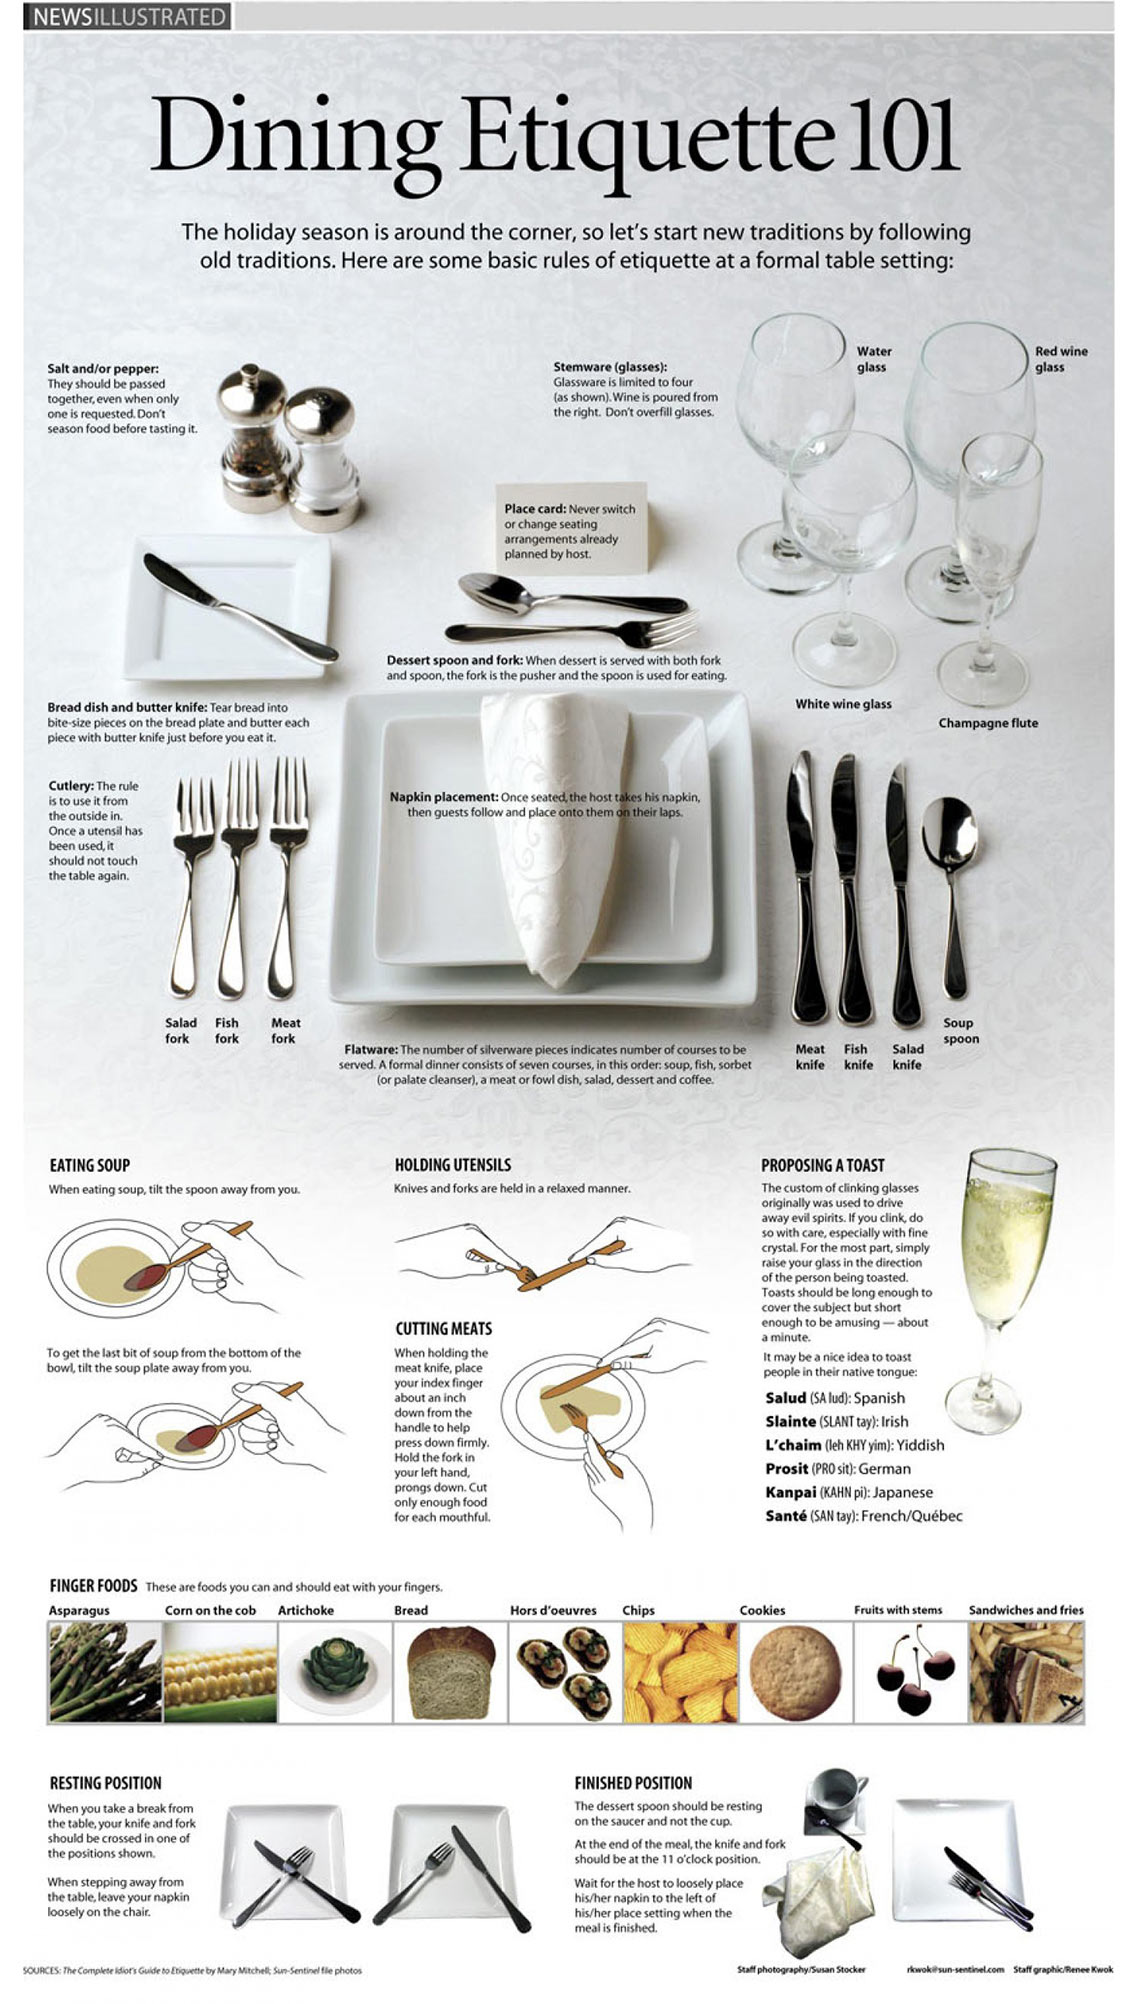 Dining Etiquette 101 Infographic